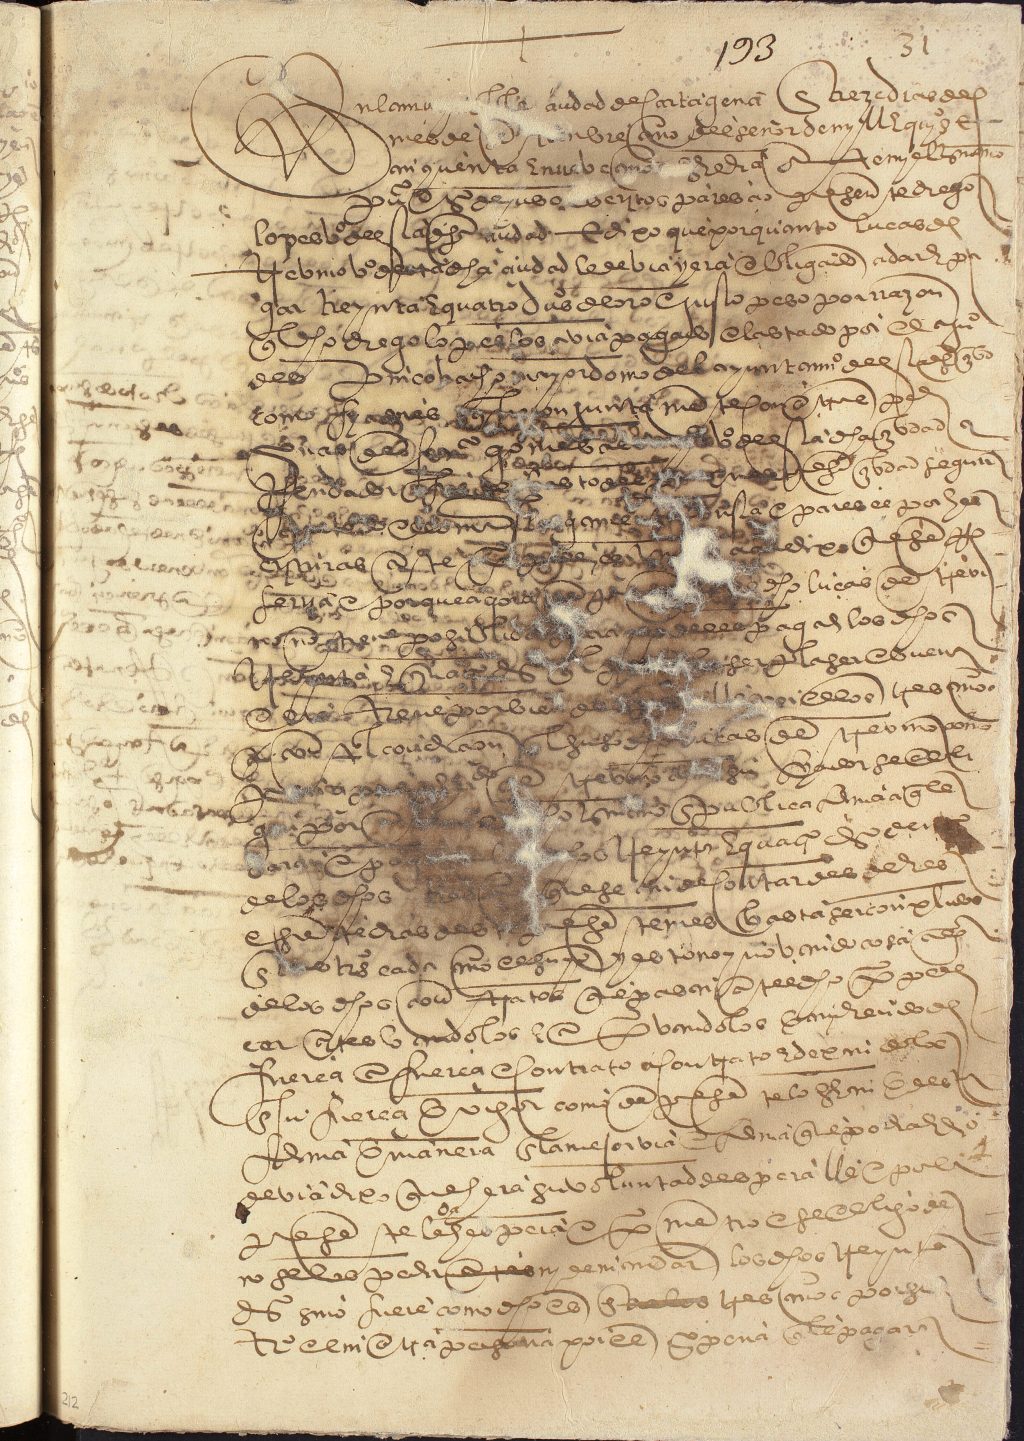 Acuerdo entre Diego López y Lucas Treviño por el pago de treinta y cuatro ducados de oro que Diego había prestado a Juan Despín Cobacho, mayordomo del Ayuntamiento de Cartagena, en nombre de Lucas.